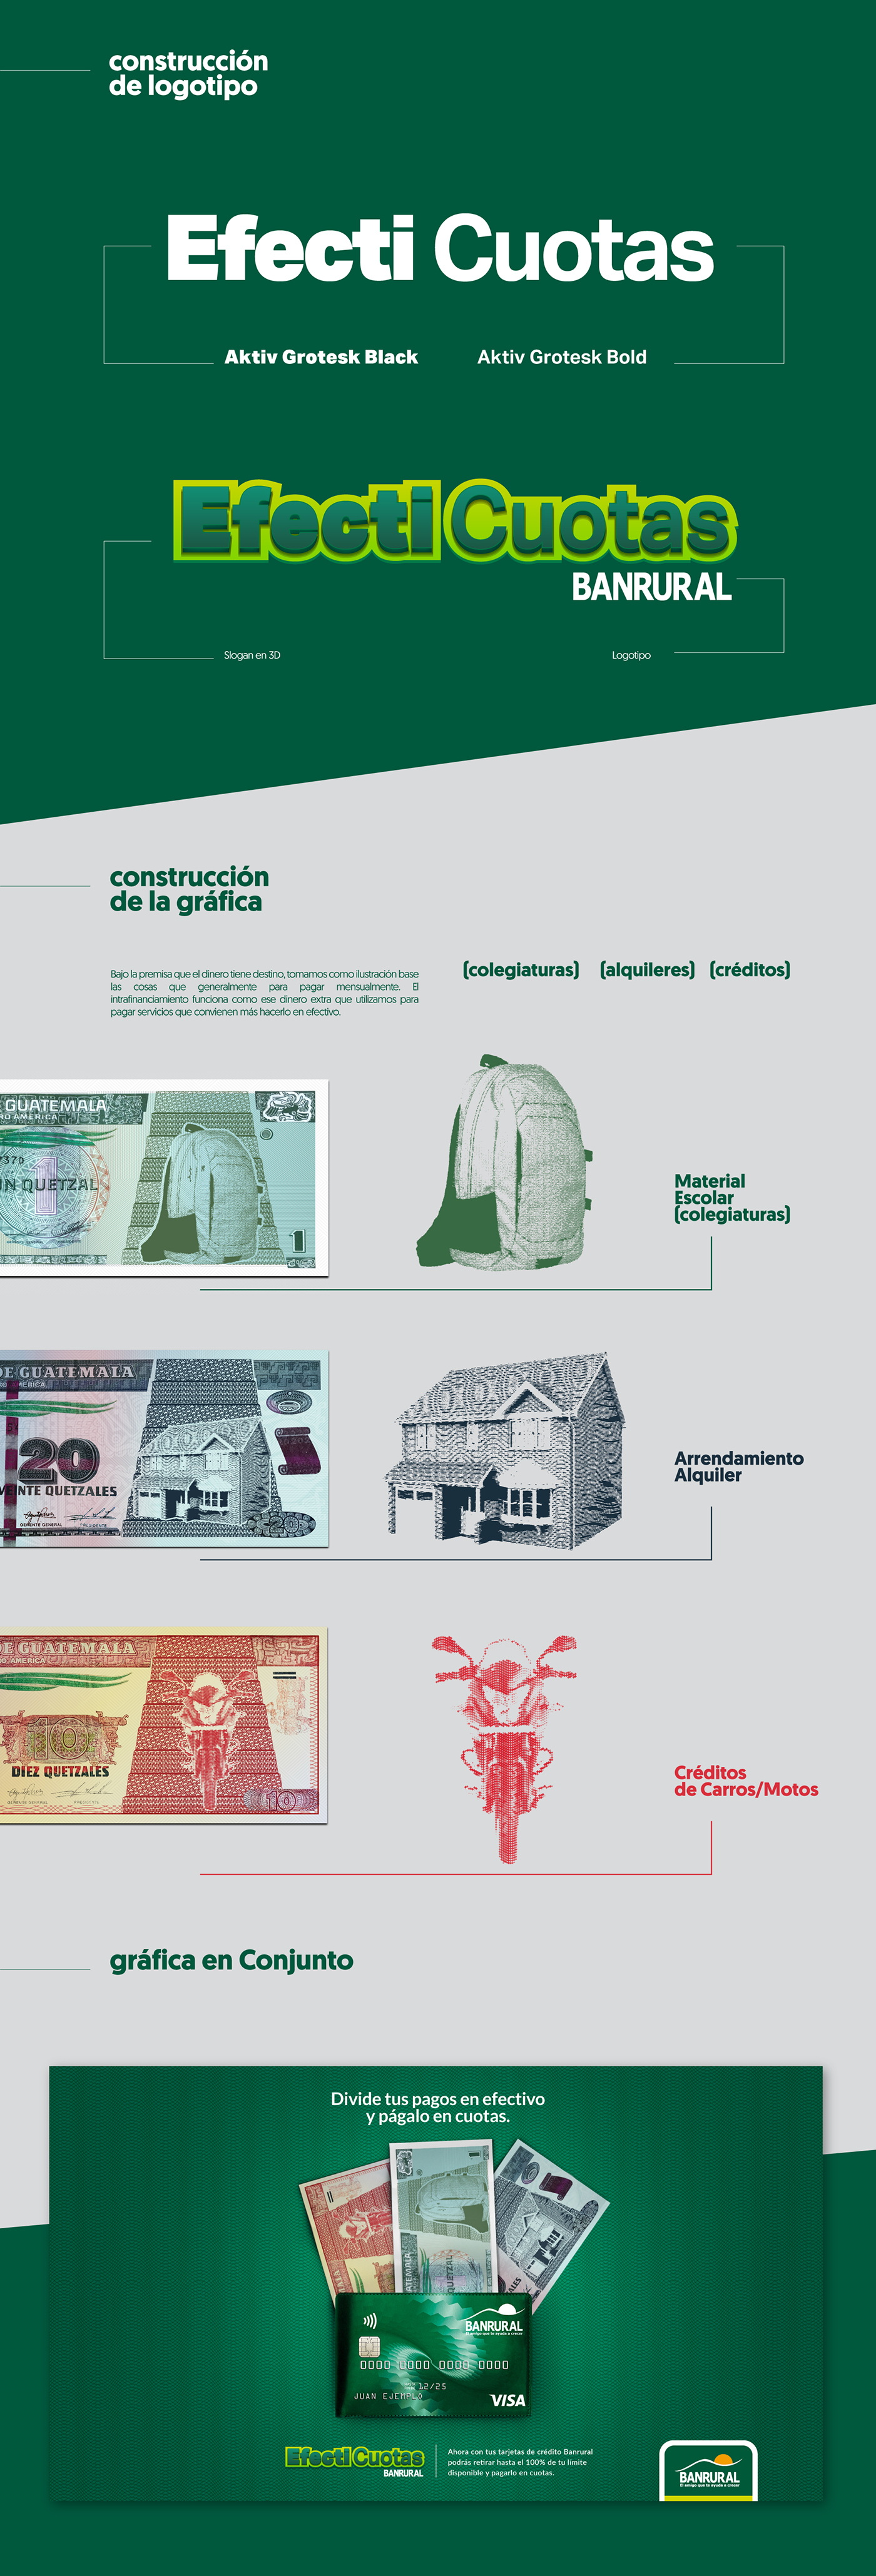 publicidad Guatemala banrural Visa mastercard campaign diseño gráfico Estudio Montenegro